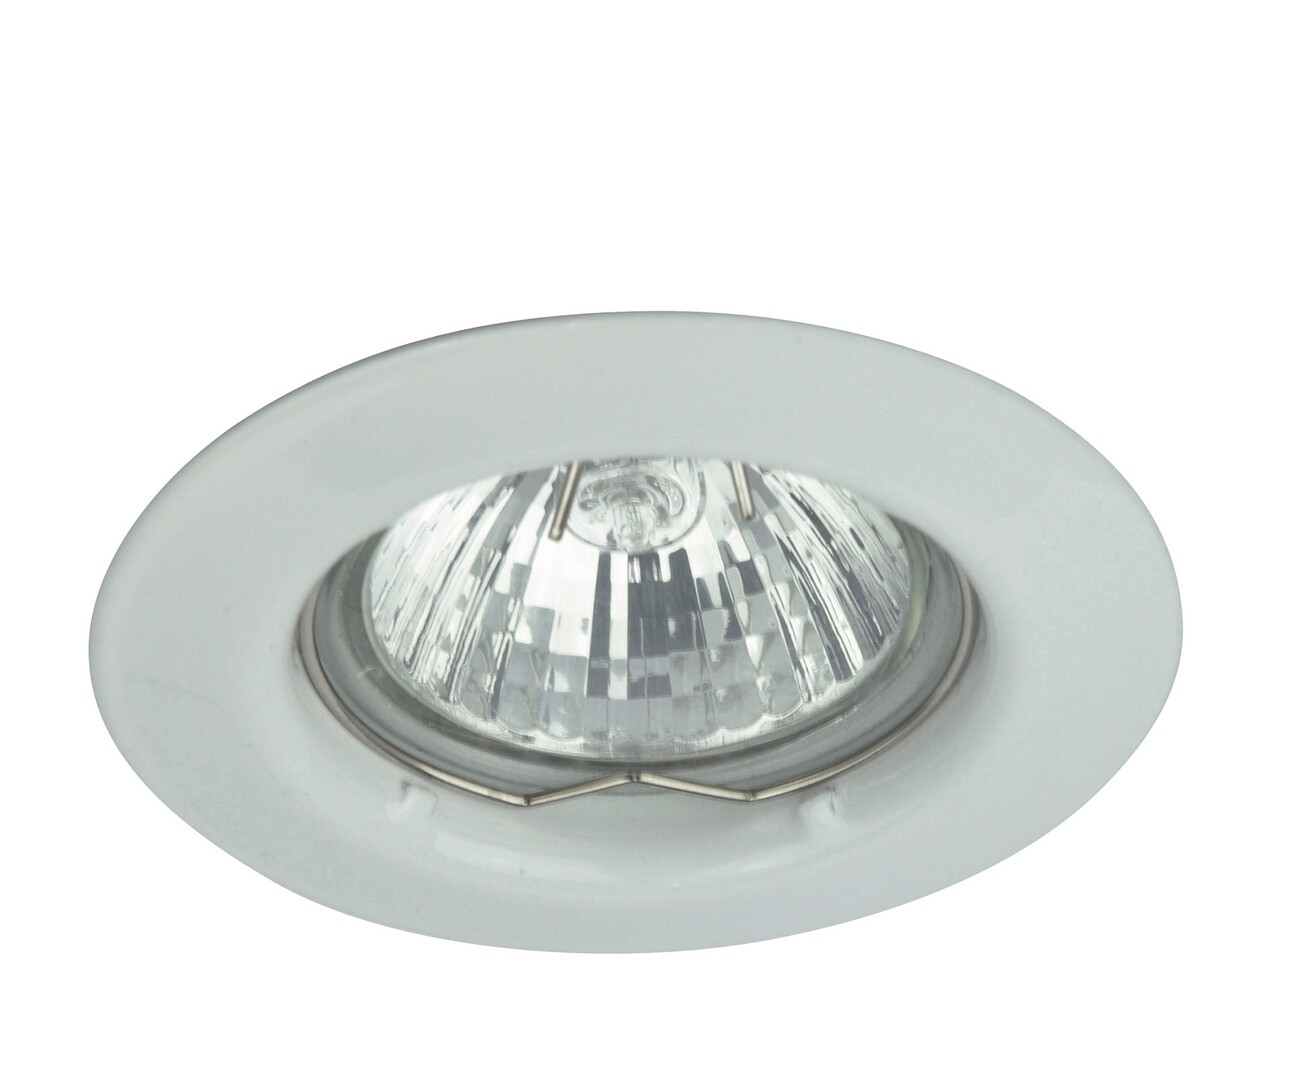 Deckenstrahler 1 Spot Relightspot 1087, GU5.3, 3000K, 350lm, Metall, weiß, rund, warmweiß, Minimal, IP20, ø80.5mm